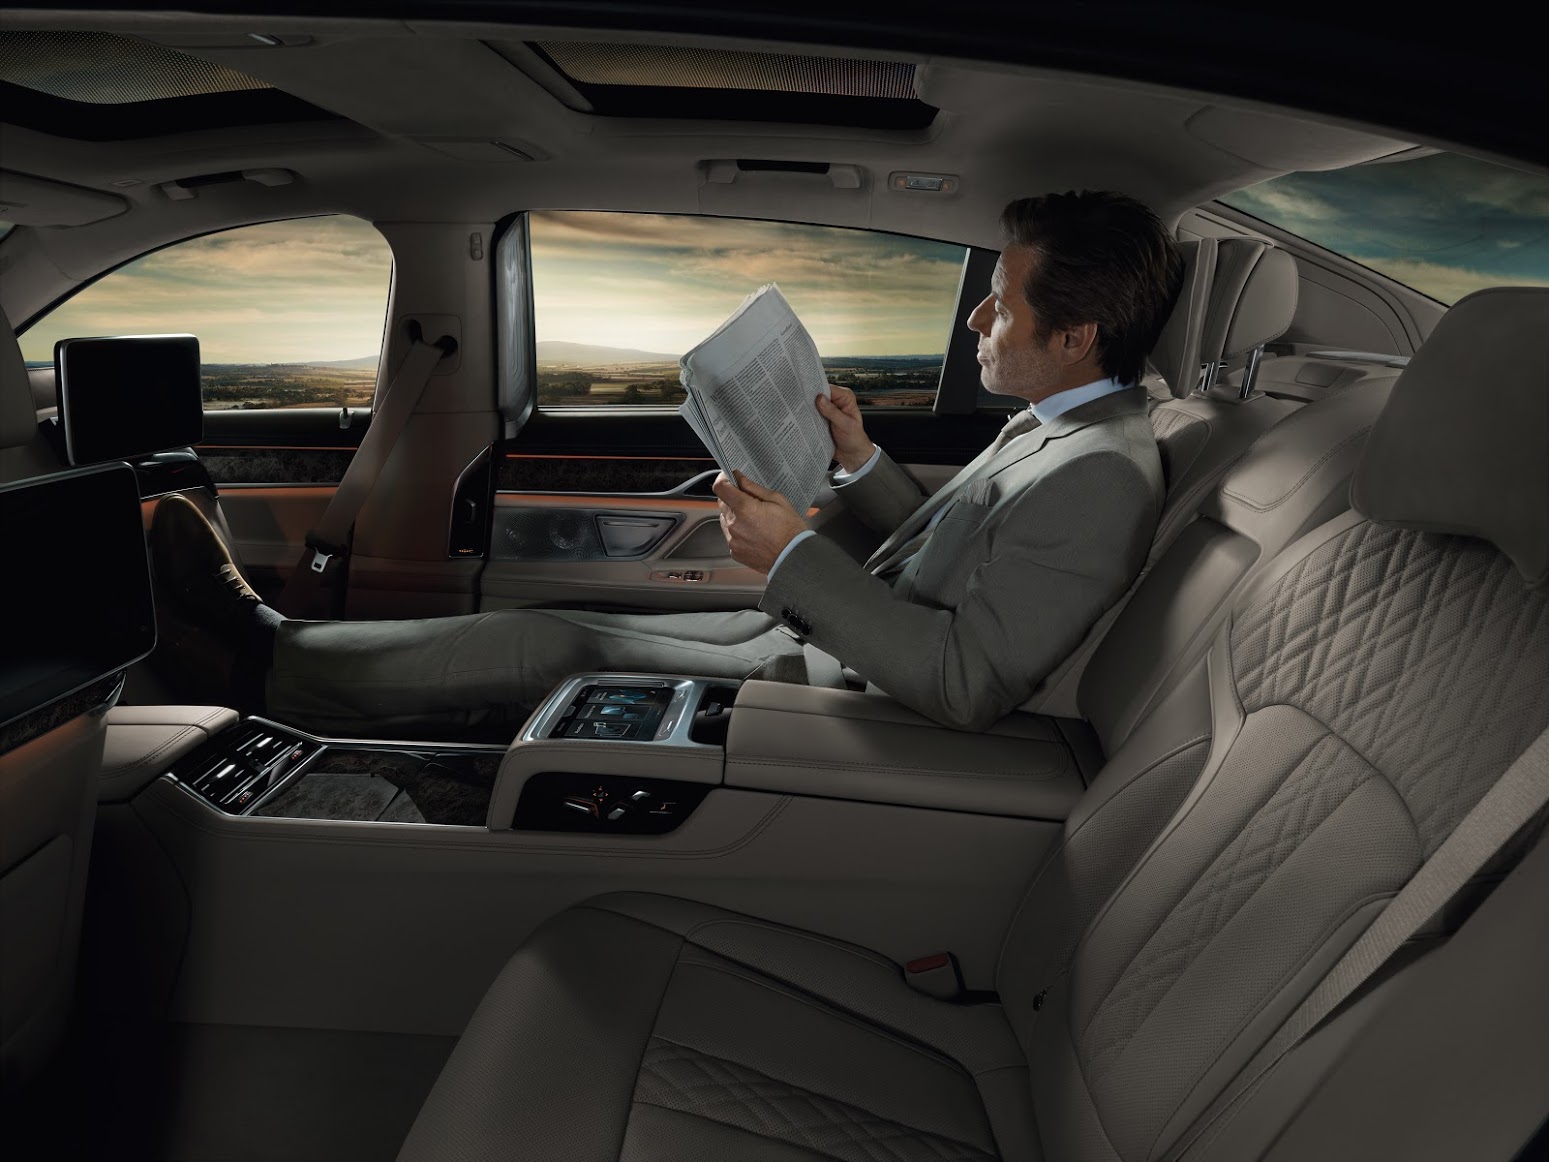 
Không gian thoải mái cho chủ nhân của chiếc xe có thể tận hưởng cảm giác nhẹ nhàng trên những chuyến đi cùng BMW 750Li.
